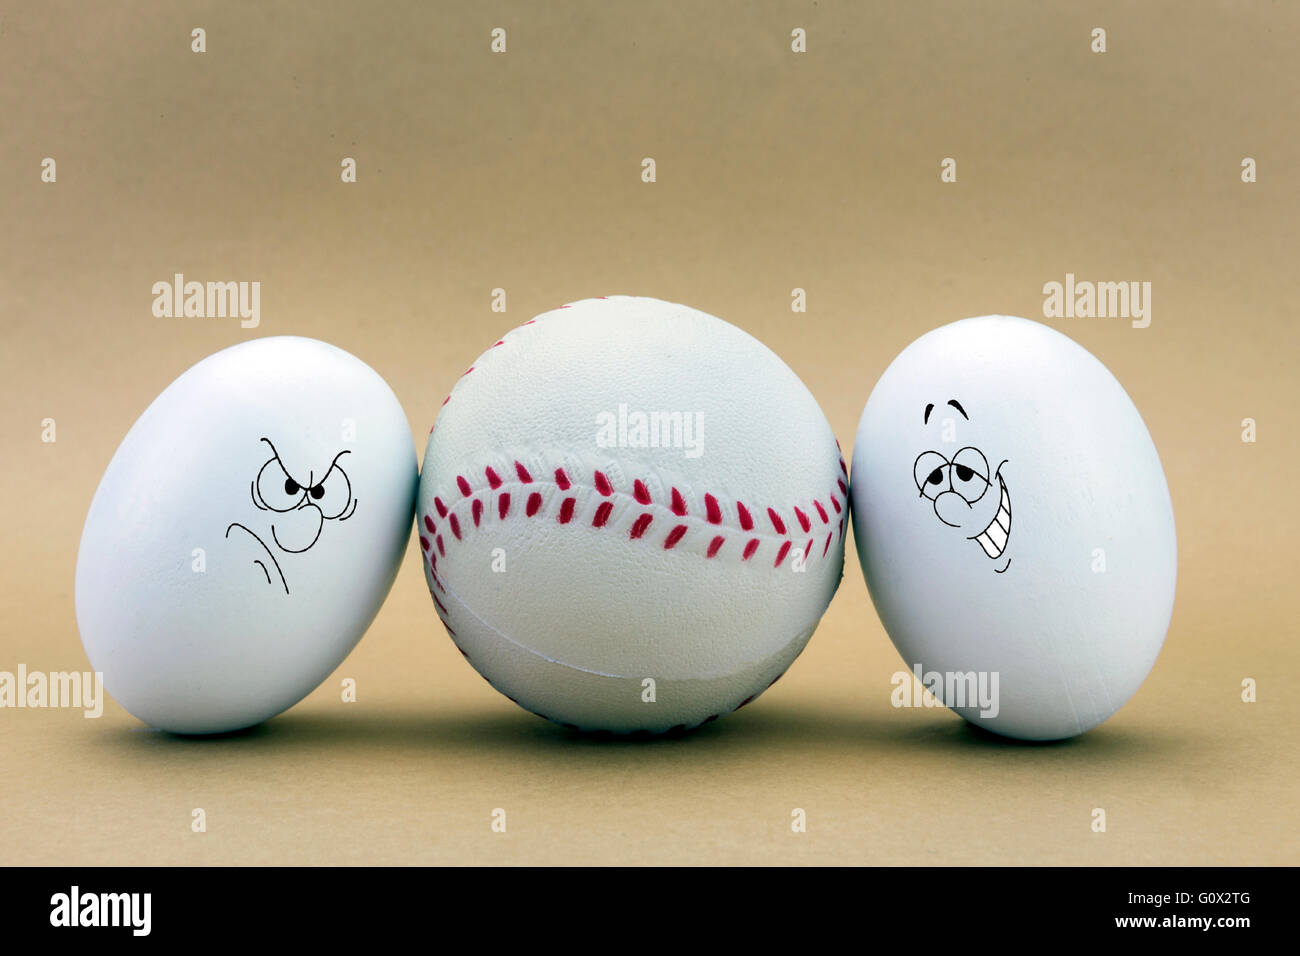 Dos huevos mirada perdida en una pelota de béisbol Foto de stock